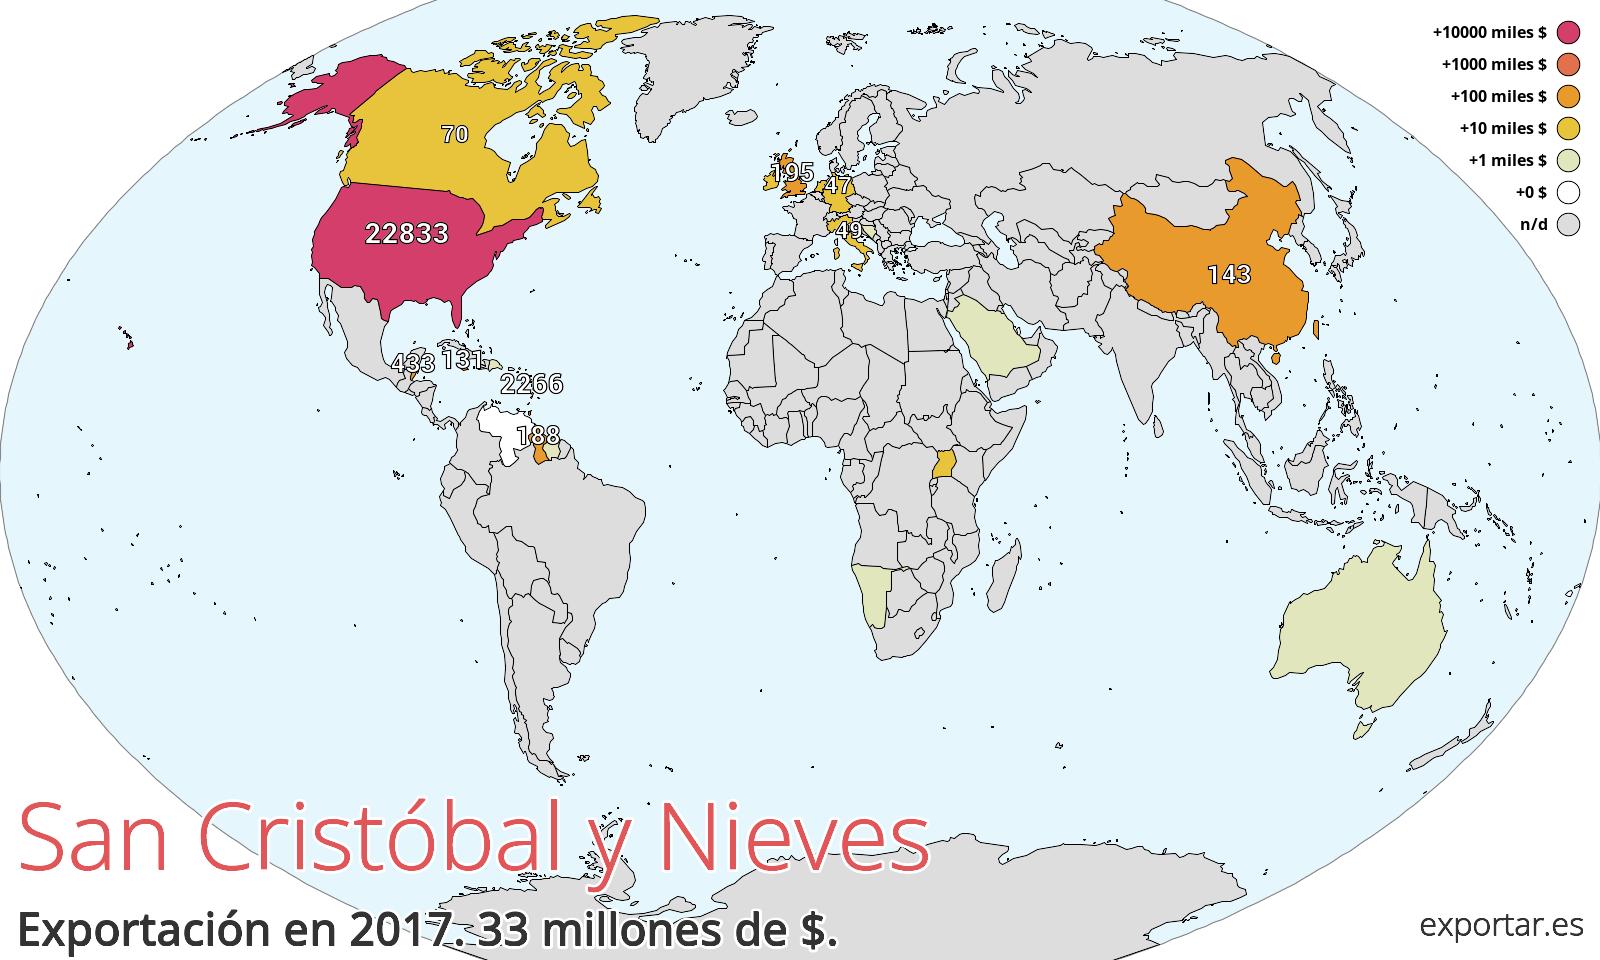 Mapa de exportación de San Cristóbal y Nieves en 2017.